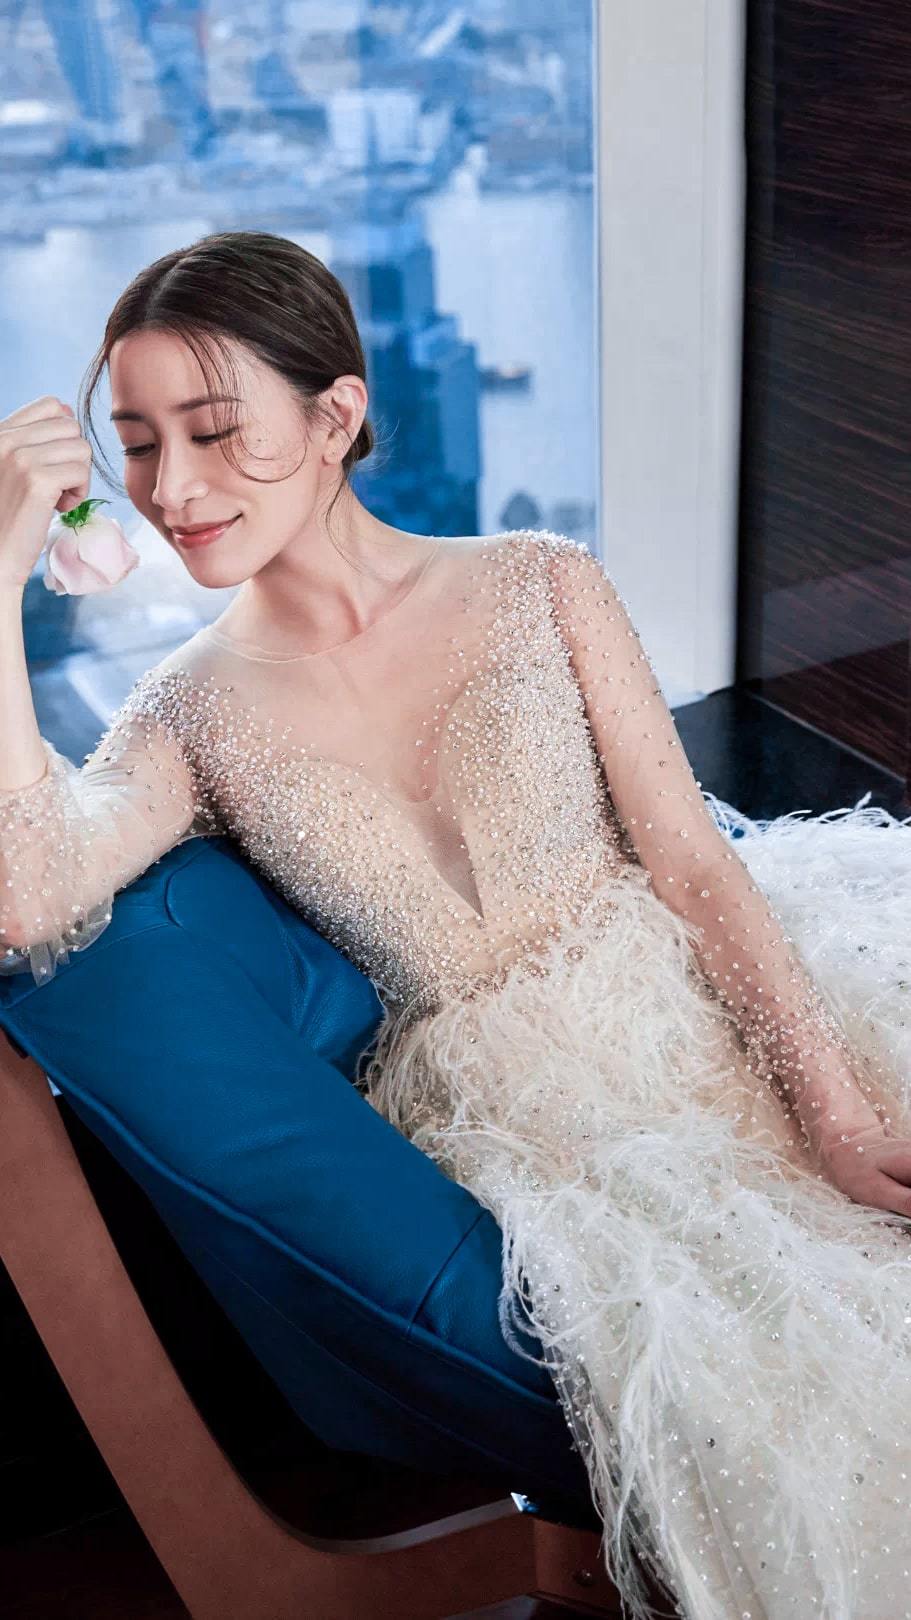  
Xa Thi Mạn quá mức xinh đẹp trong áo cô dâu. (Ảnh: Weibo).